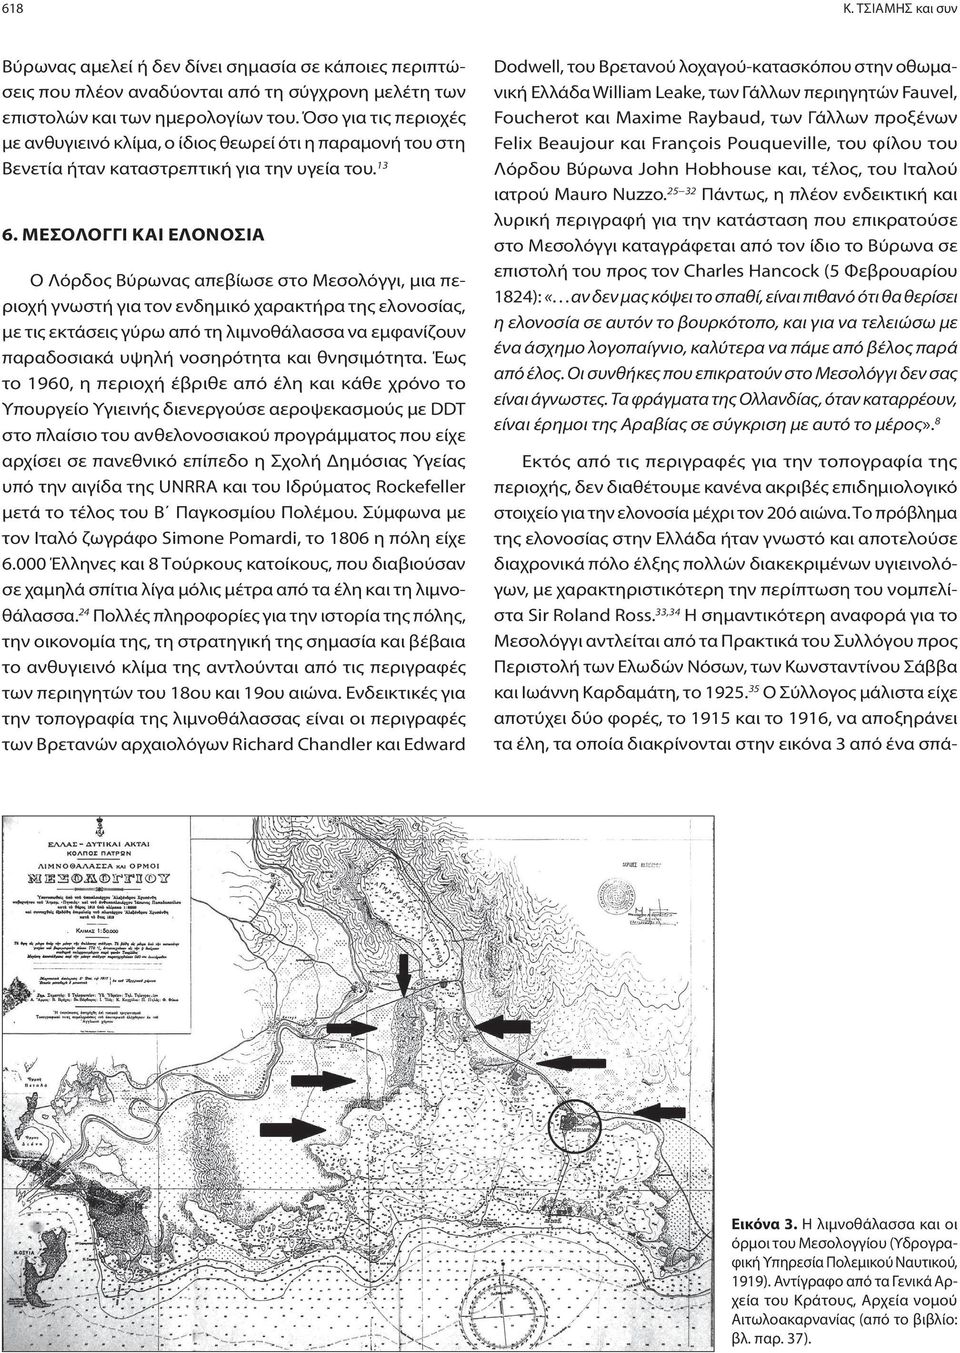 ΜΕΣΟΛΟΓΓΙ ΚΑΙ ΕΛΟΝΟΣΙΑ Ο Λόρδος Βύρωνας απεβίωσε στο Μεσολόγγι, μια περιοχή γνωστή για τον ενδημικό χαρακτήρα της ελονοσίας, με τις εκτάσεις γύρω από τη λιμνοθάλασσα να εμφανίζουν παραδοσιακά υψηλή